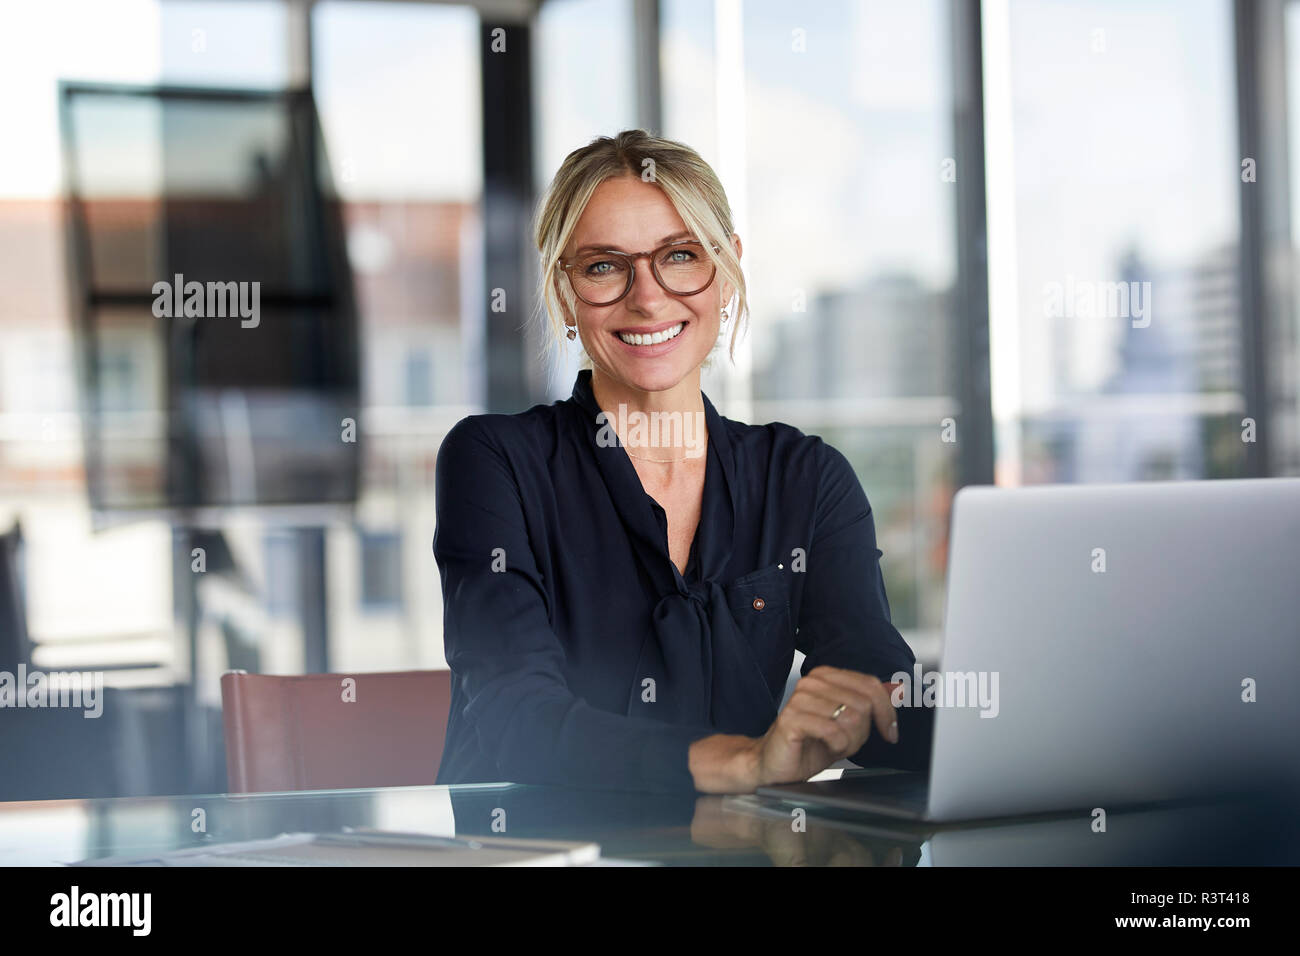 La empresaria sentados frente al escritorio, utilizando equipo portátil, muy sonriente y amable Foto de stock